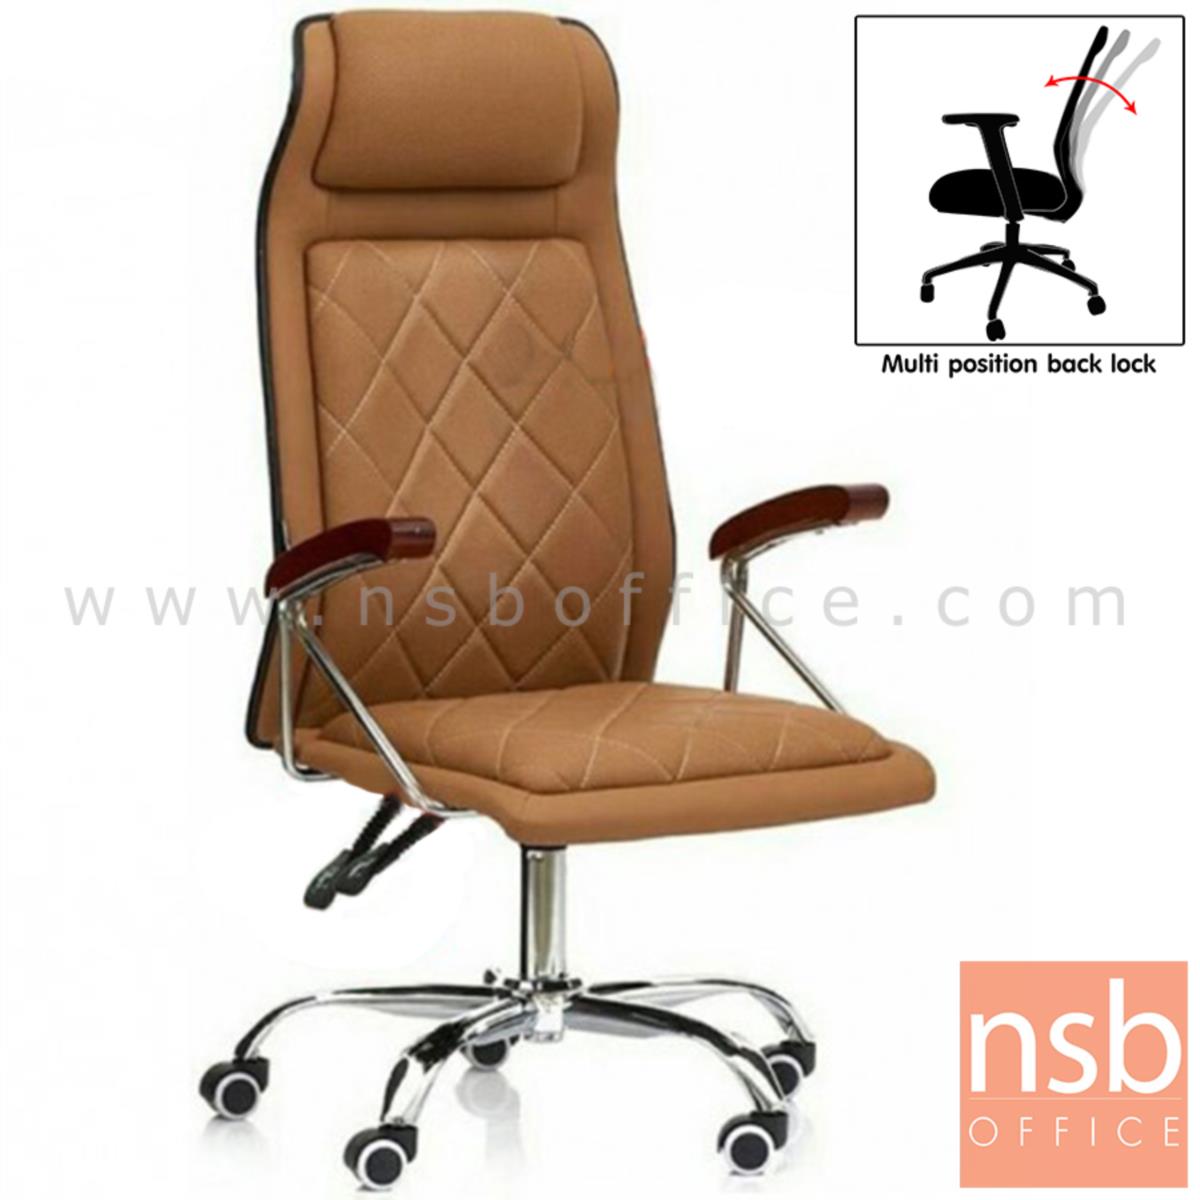 B01A338:เก้าอี้ผู้บริหาร รุ่น Bellamy (เบลลามี)  โช๊คแก๊ส ขาเหล็กชุบโครเมี่ยม